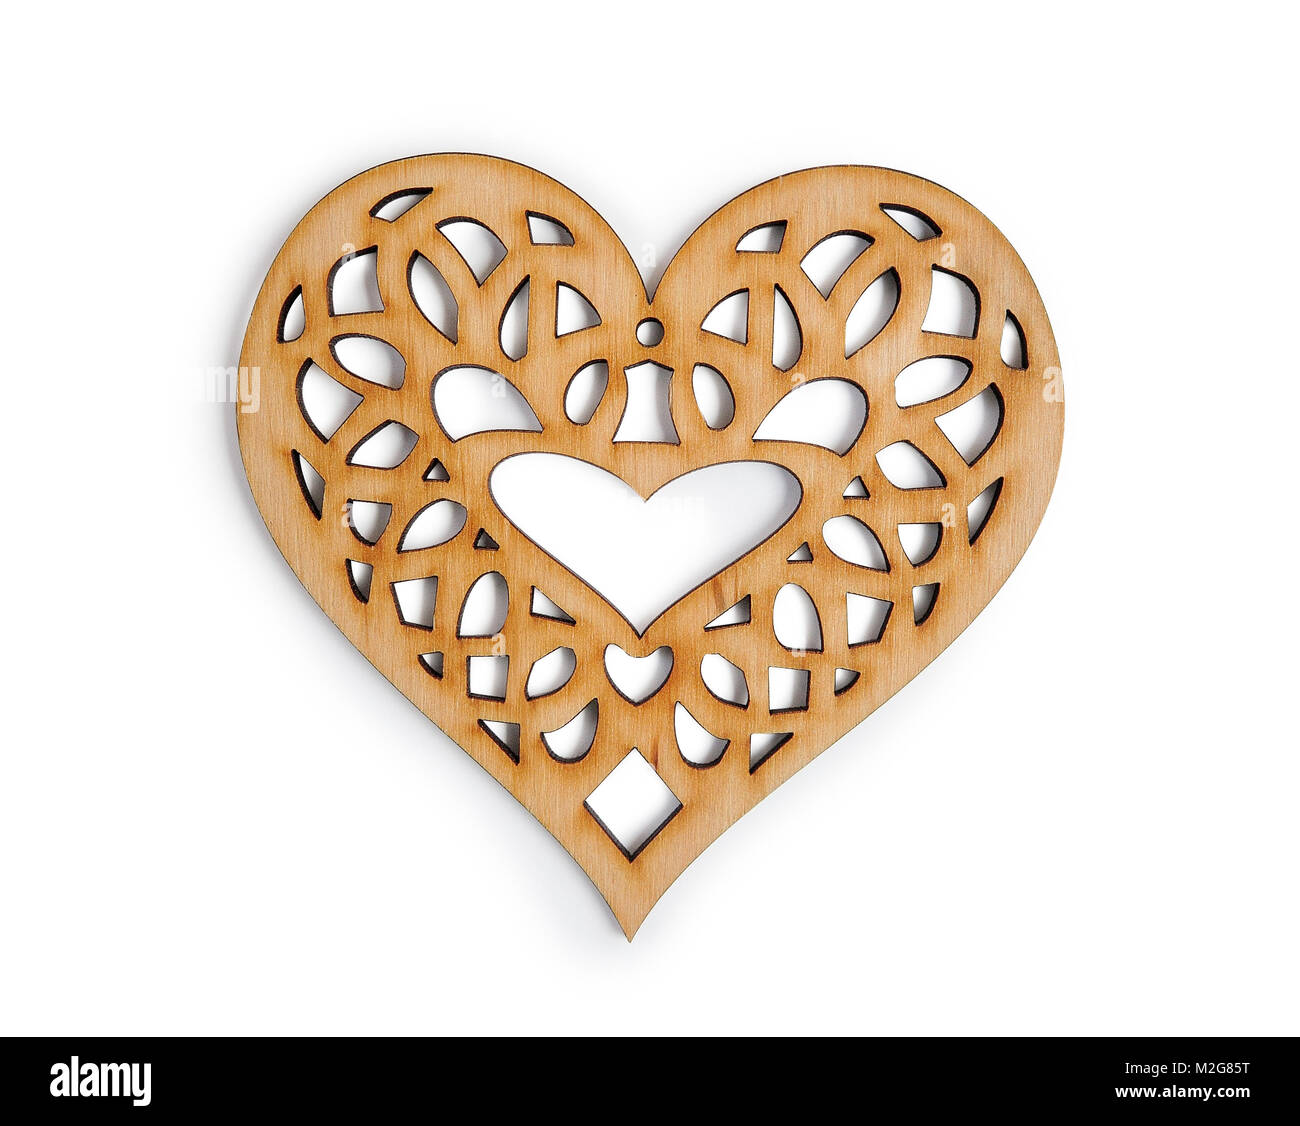 Holz- Herzen auf isolierten Freistellungsmaske auf weißem Hintergrund, Top View Abbildung zum Valentinstag oder Hochzeit Stockfoto